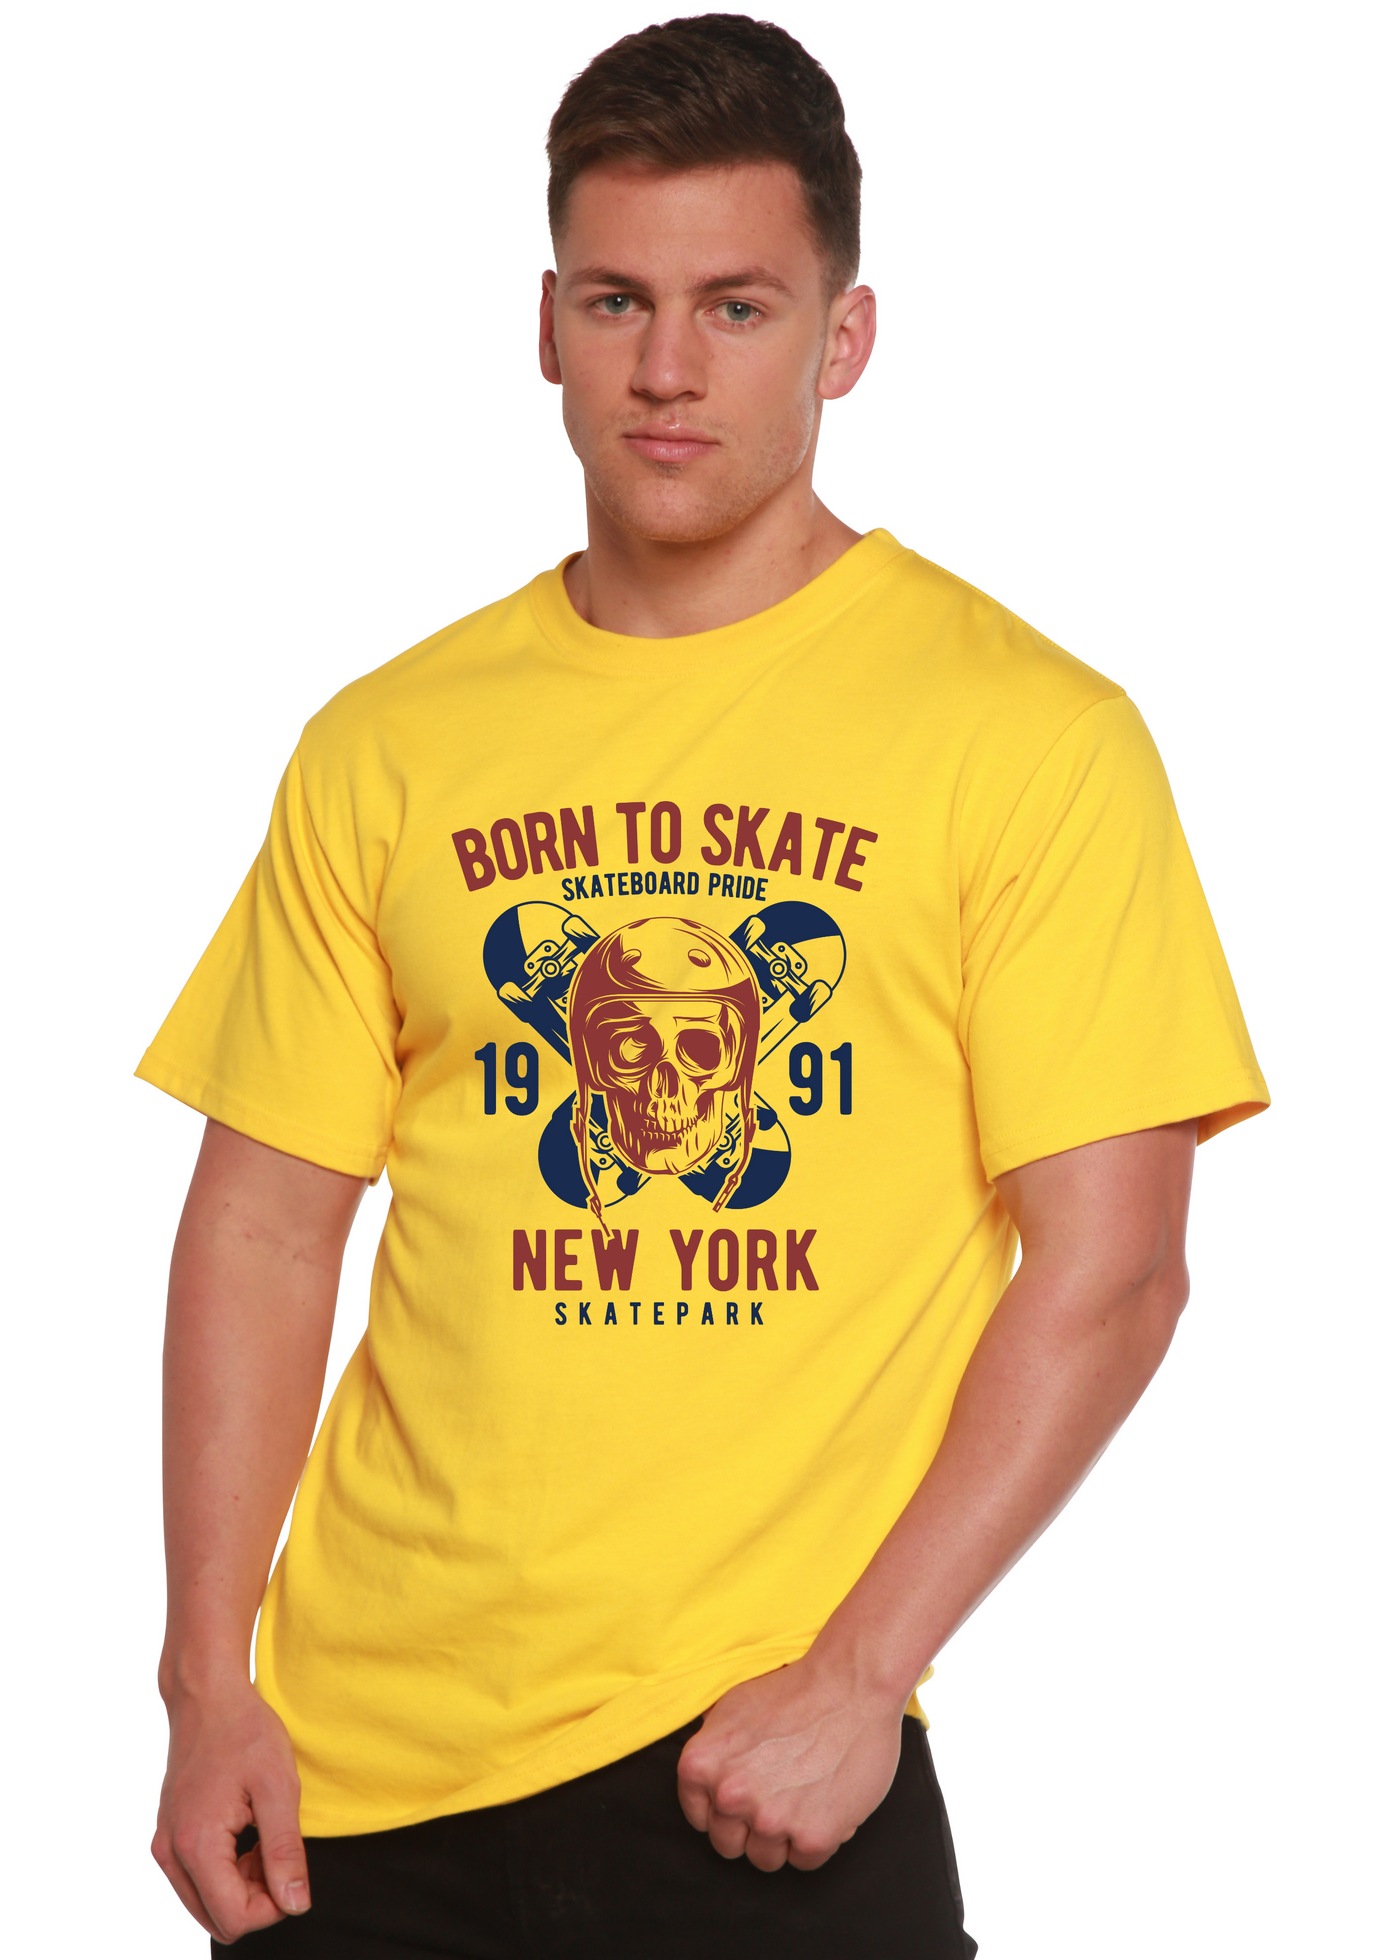 Born To Skate 1991 New York men's bamboo tshirt lemon chrome